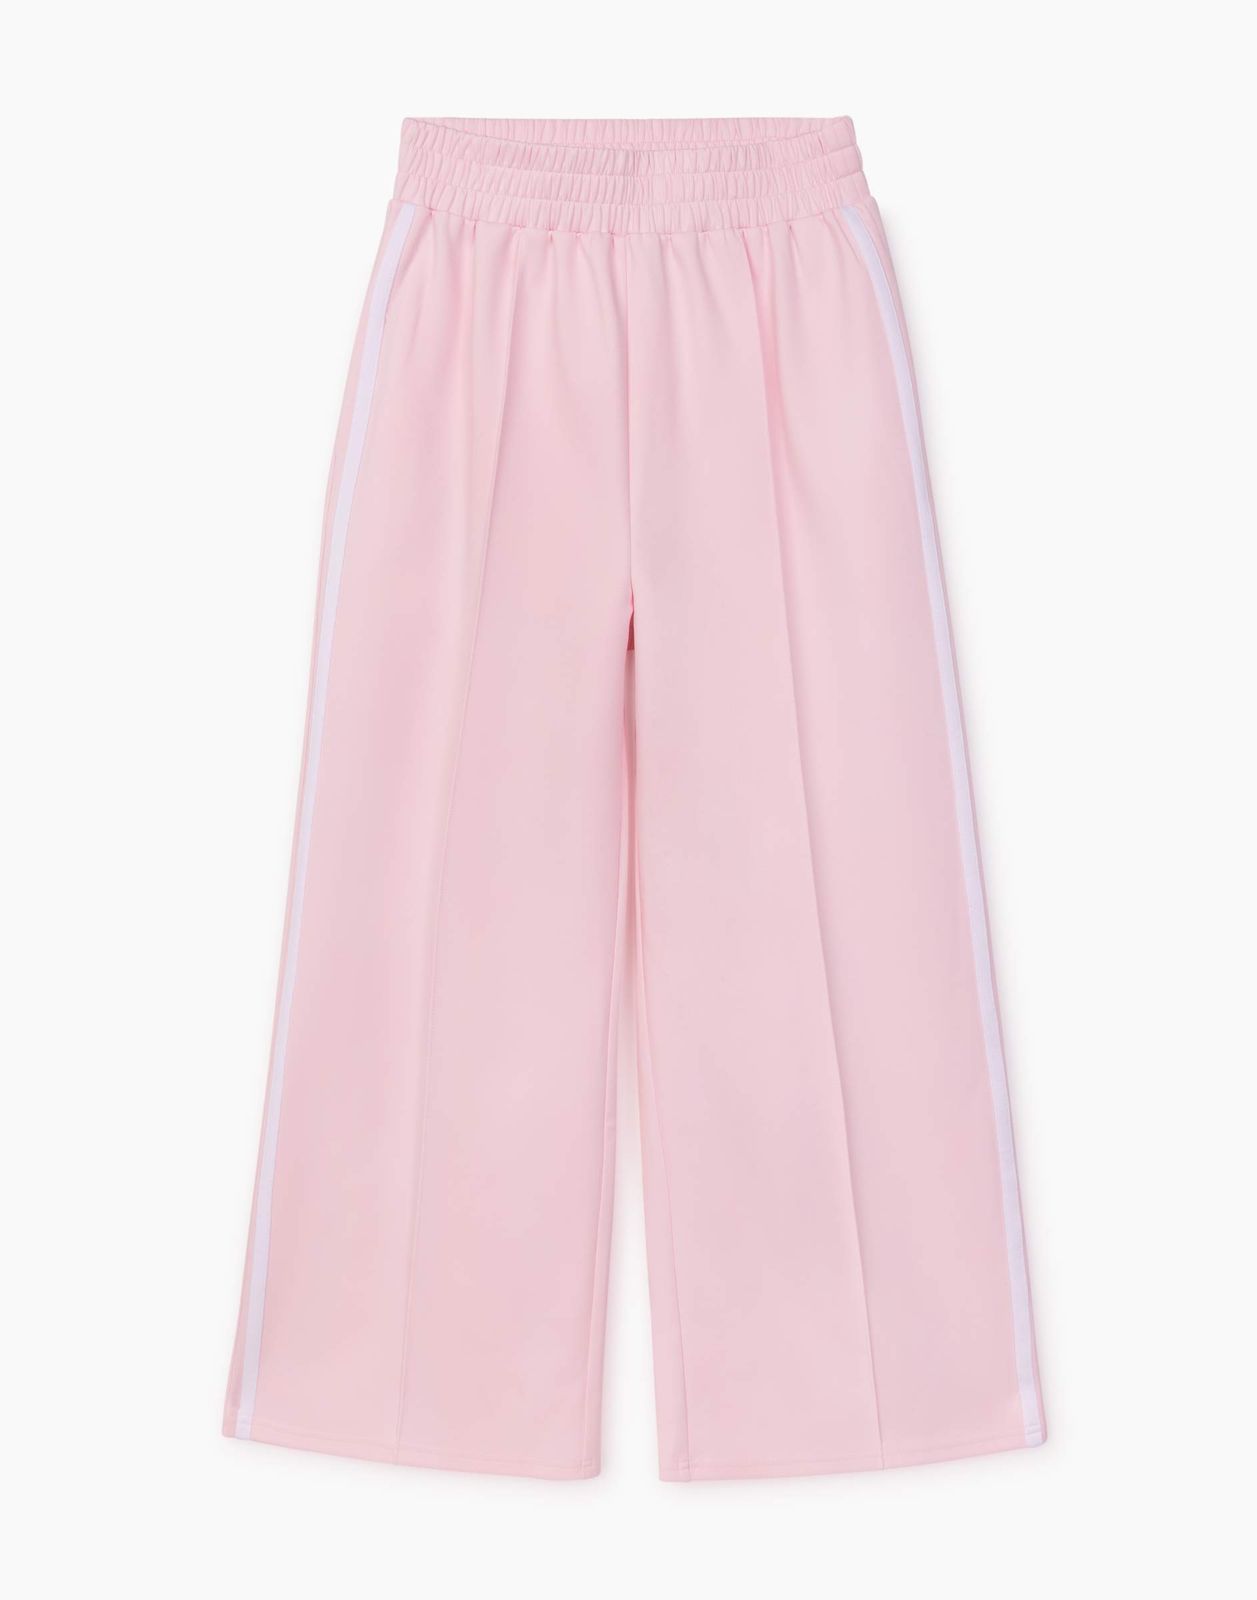 Брюки детские Gloria Jeans GAC022675, розовый, 170